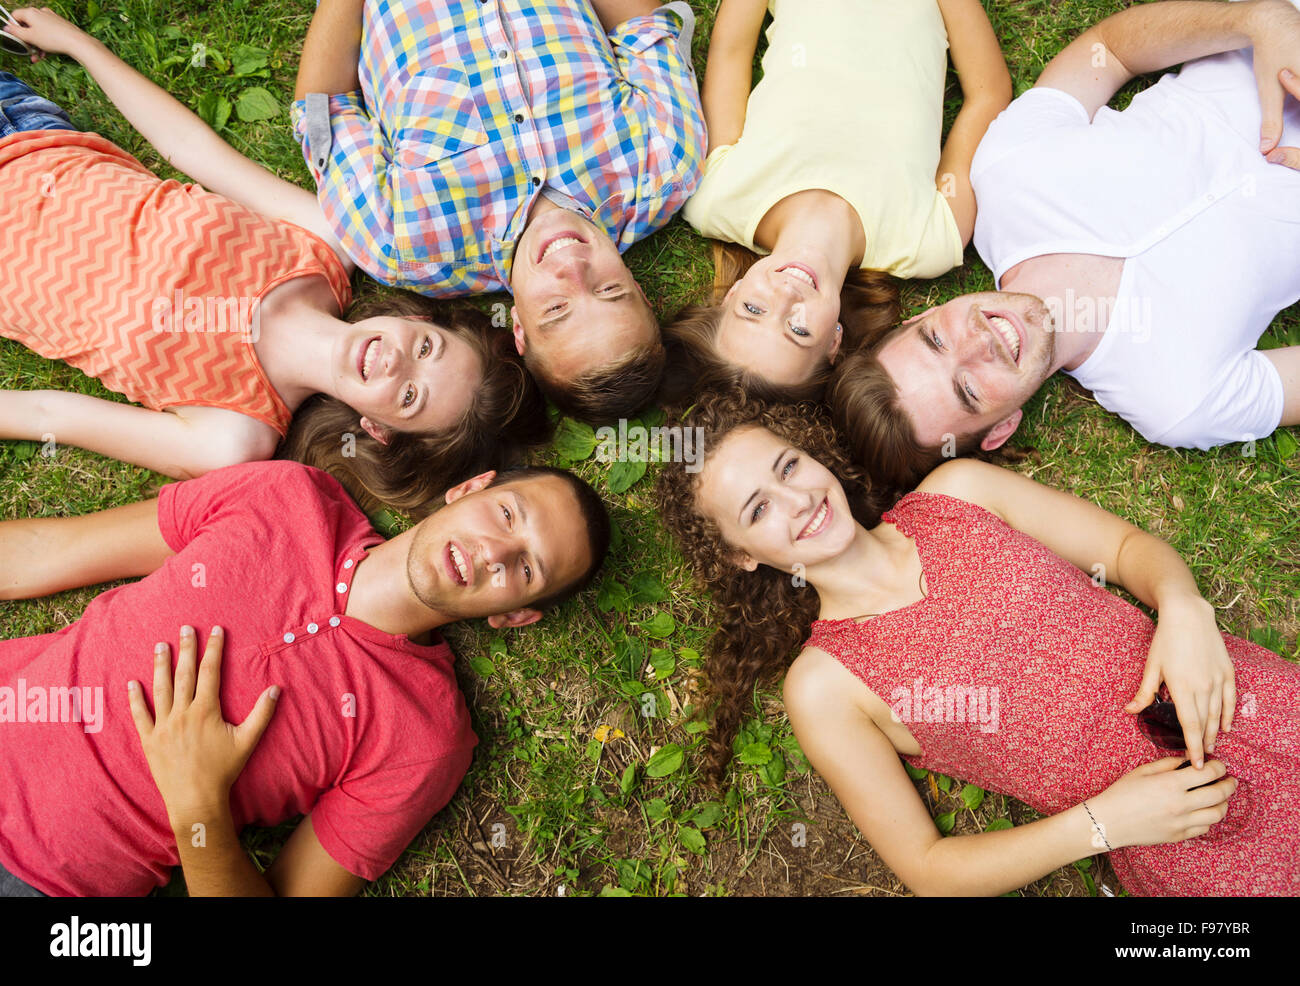 Gruppe von jungen Leuten Spaß im Park, auf der Wiese liegend Stockfoto